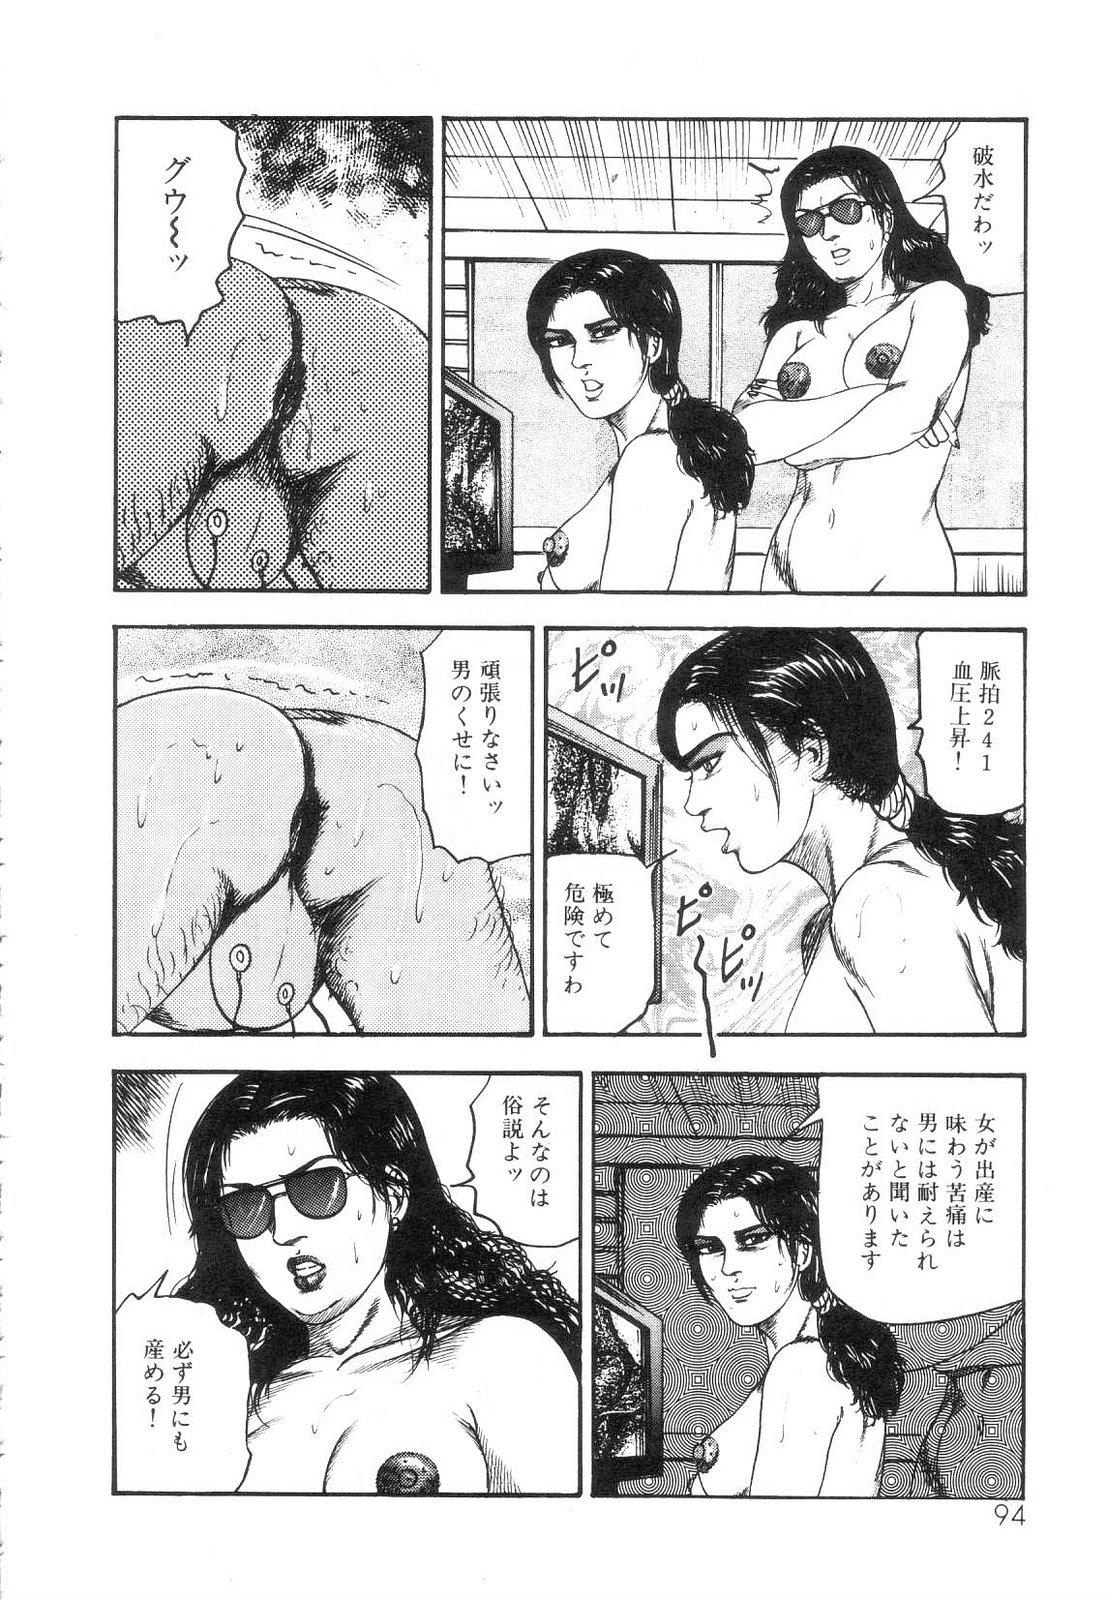 Shiro no Mokushiroku Vol. 5 - Ninshoujo Erika no Shou 95